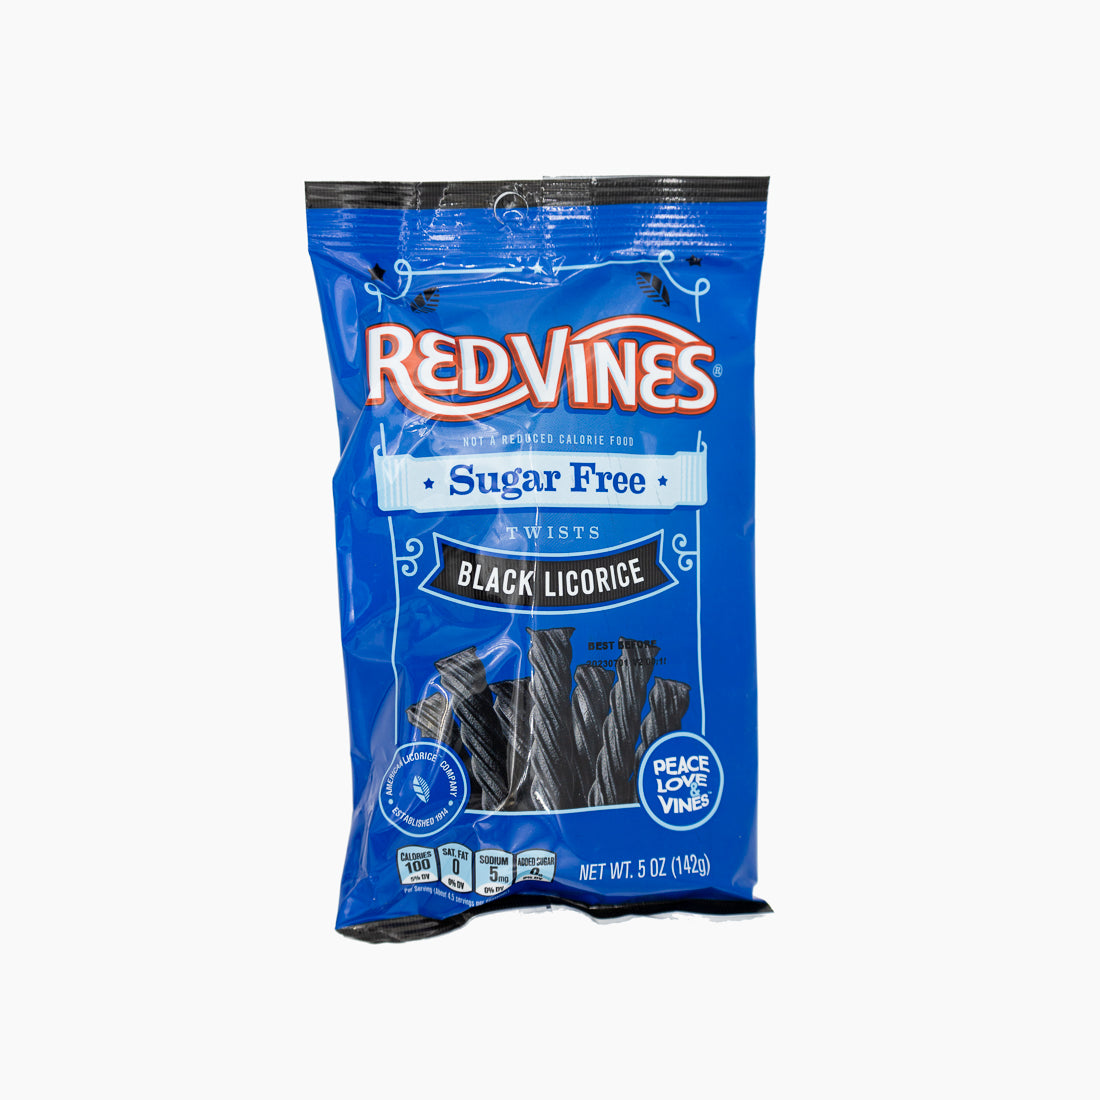 Red Vines Sugar Free Black Licorice Bag